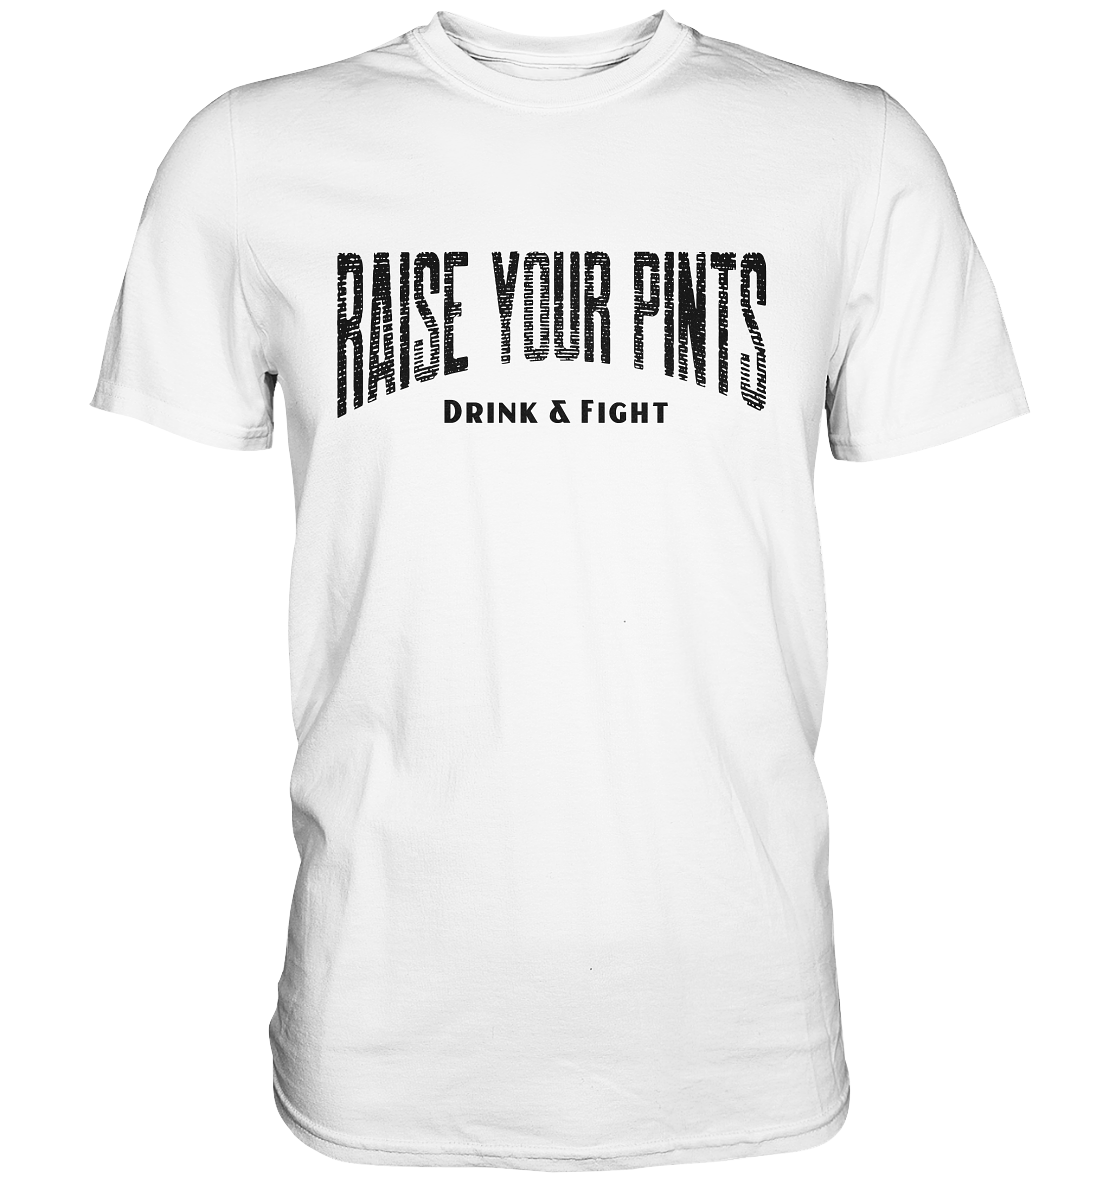 Raise Your Pints "Drink & Fight" - Premium Shirt